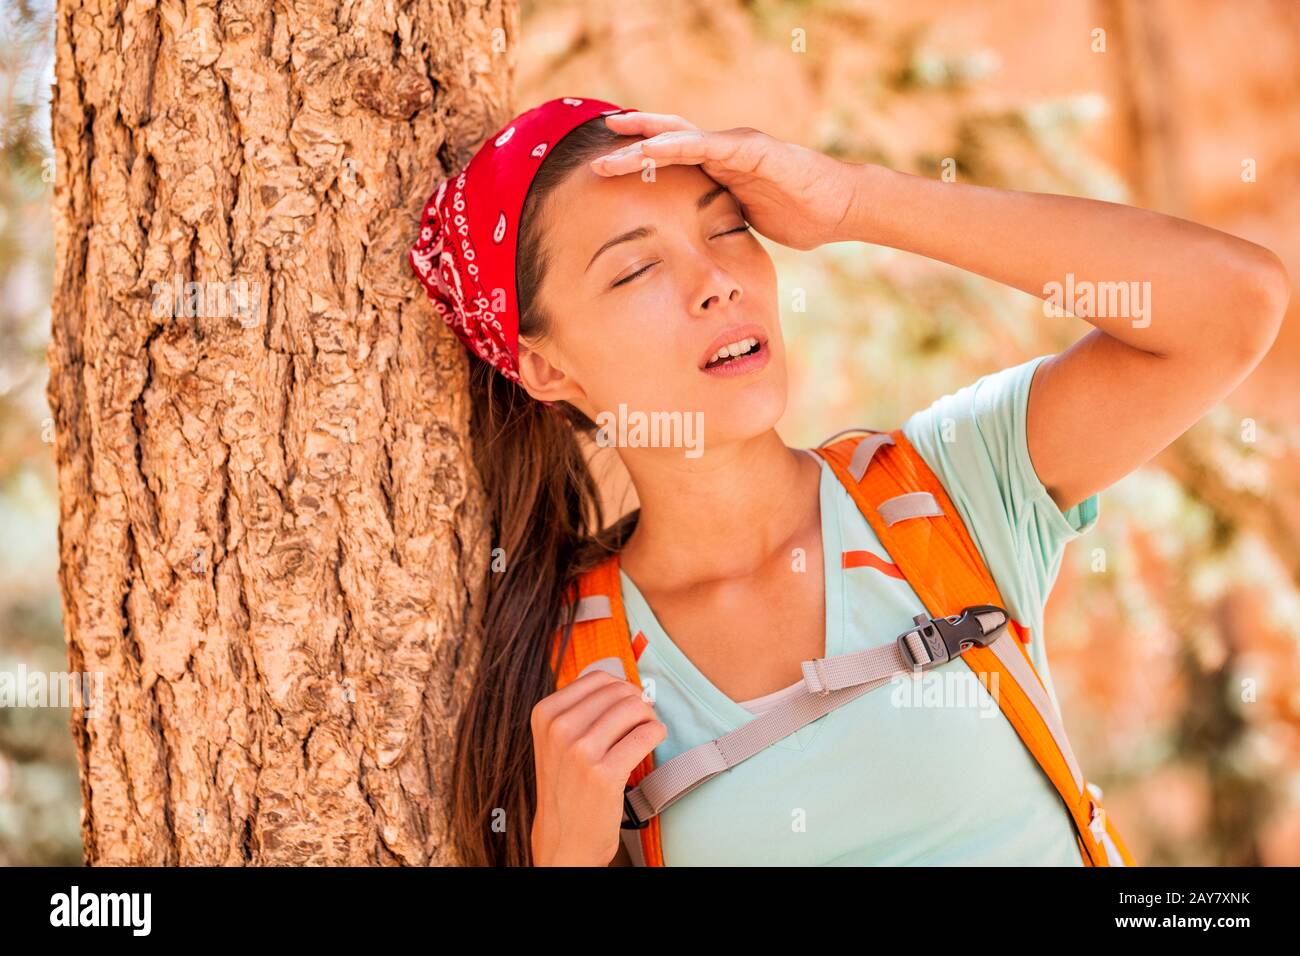 Disidratato stanco trekking donna sete sensazione di stanchezza colpo di calore. Ragazza con mal di testa da temperatura calda su attività all'aperto hiker lifestyle. Foto Stock